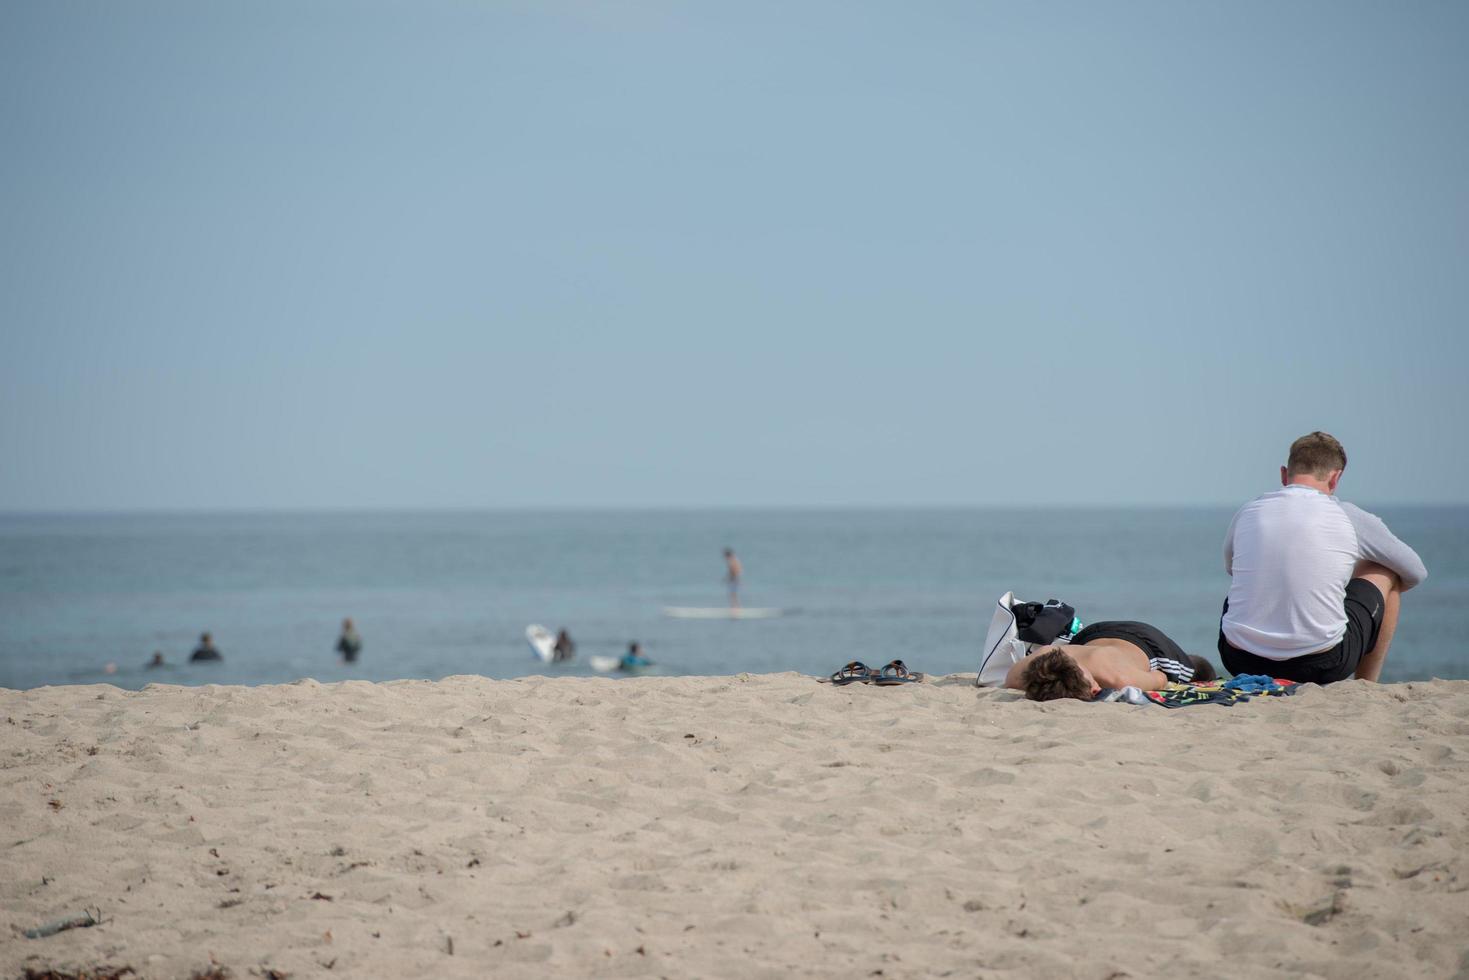 los engelen, Verenigde Staten van Amerika - augustus 5, 2014 - mensen in Venetië strand landschap foto